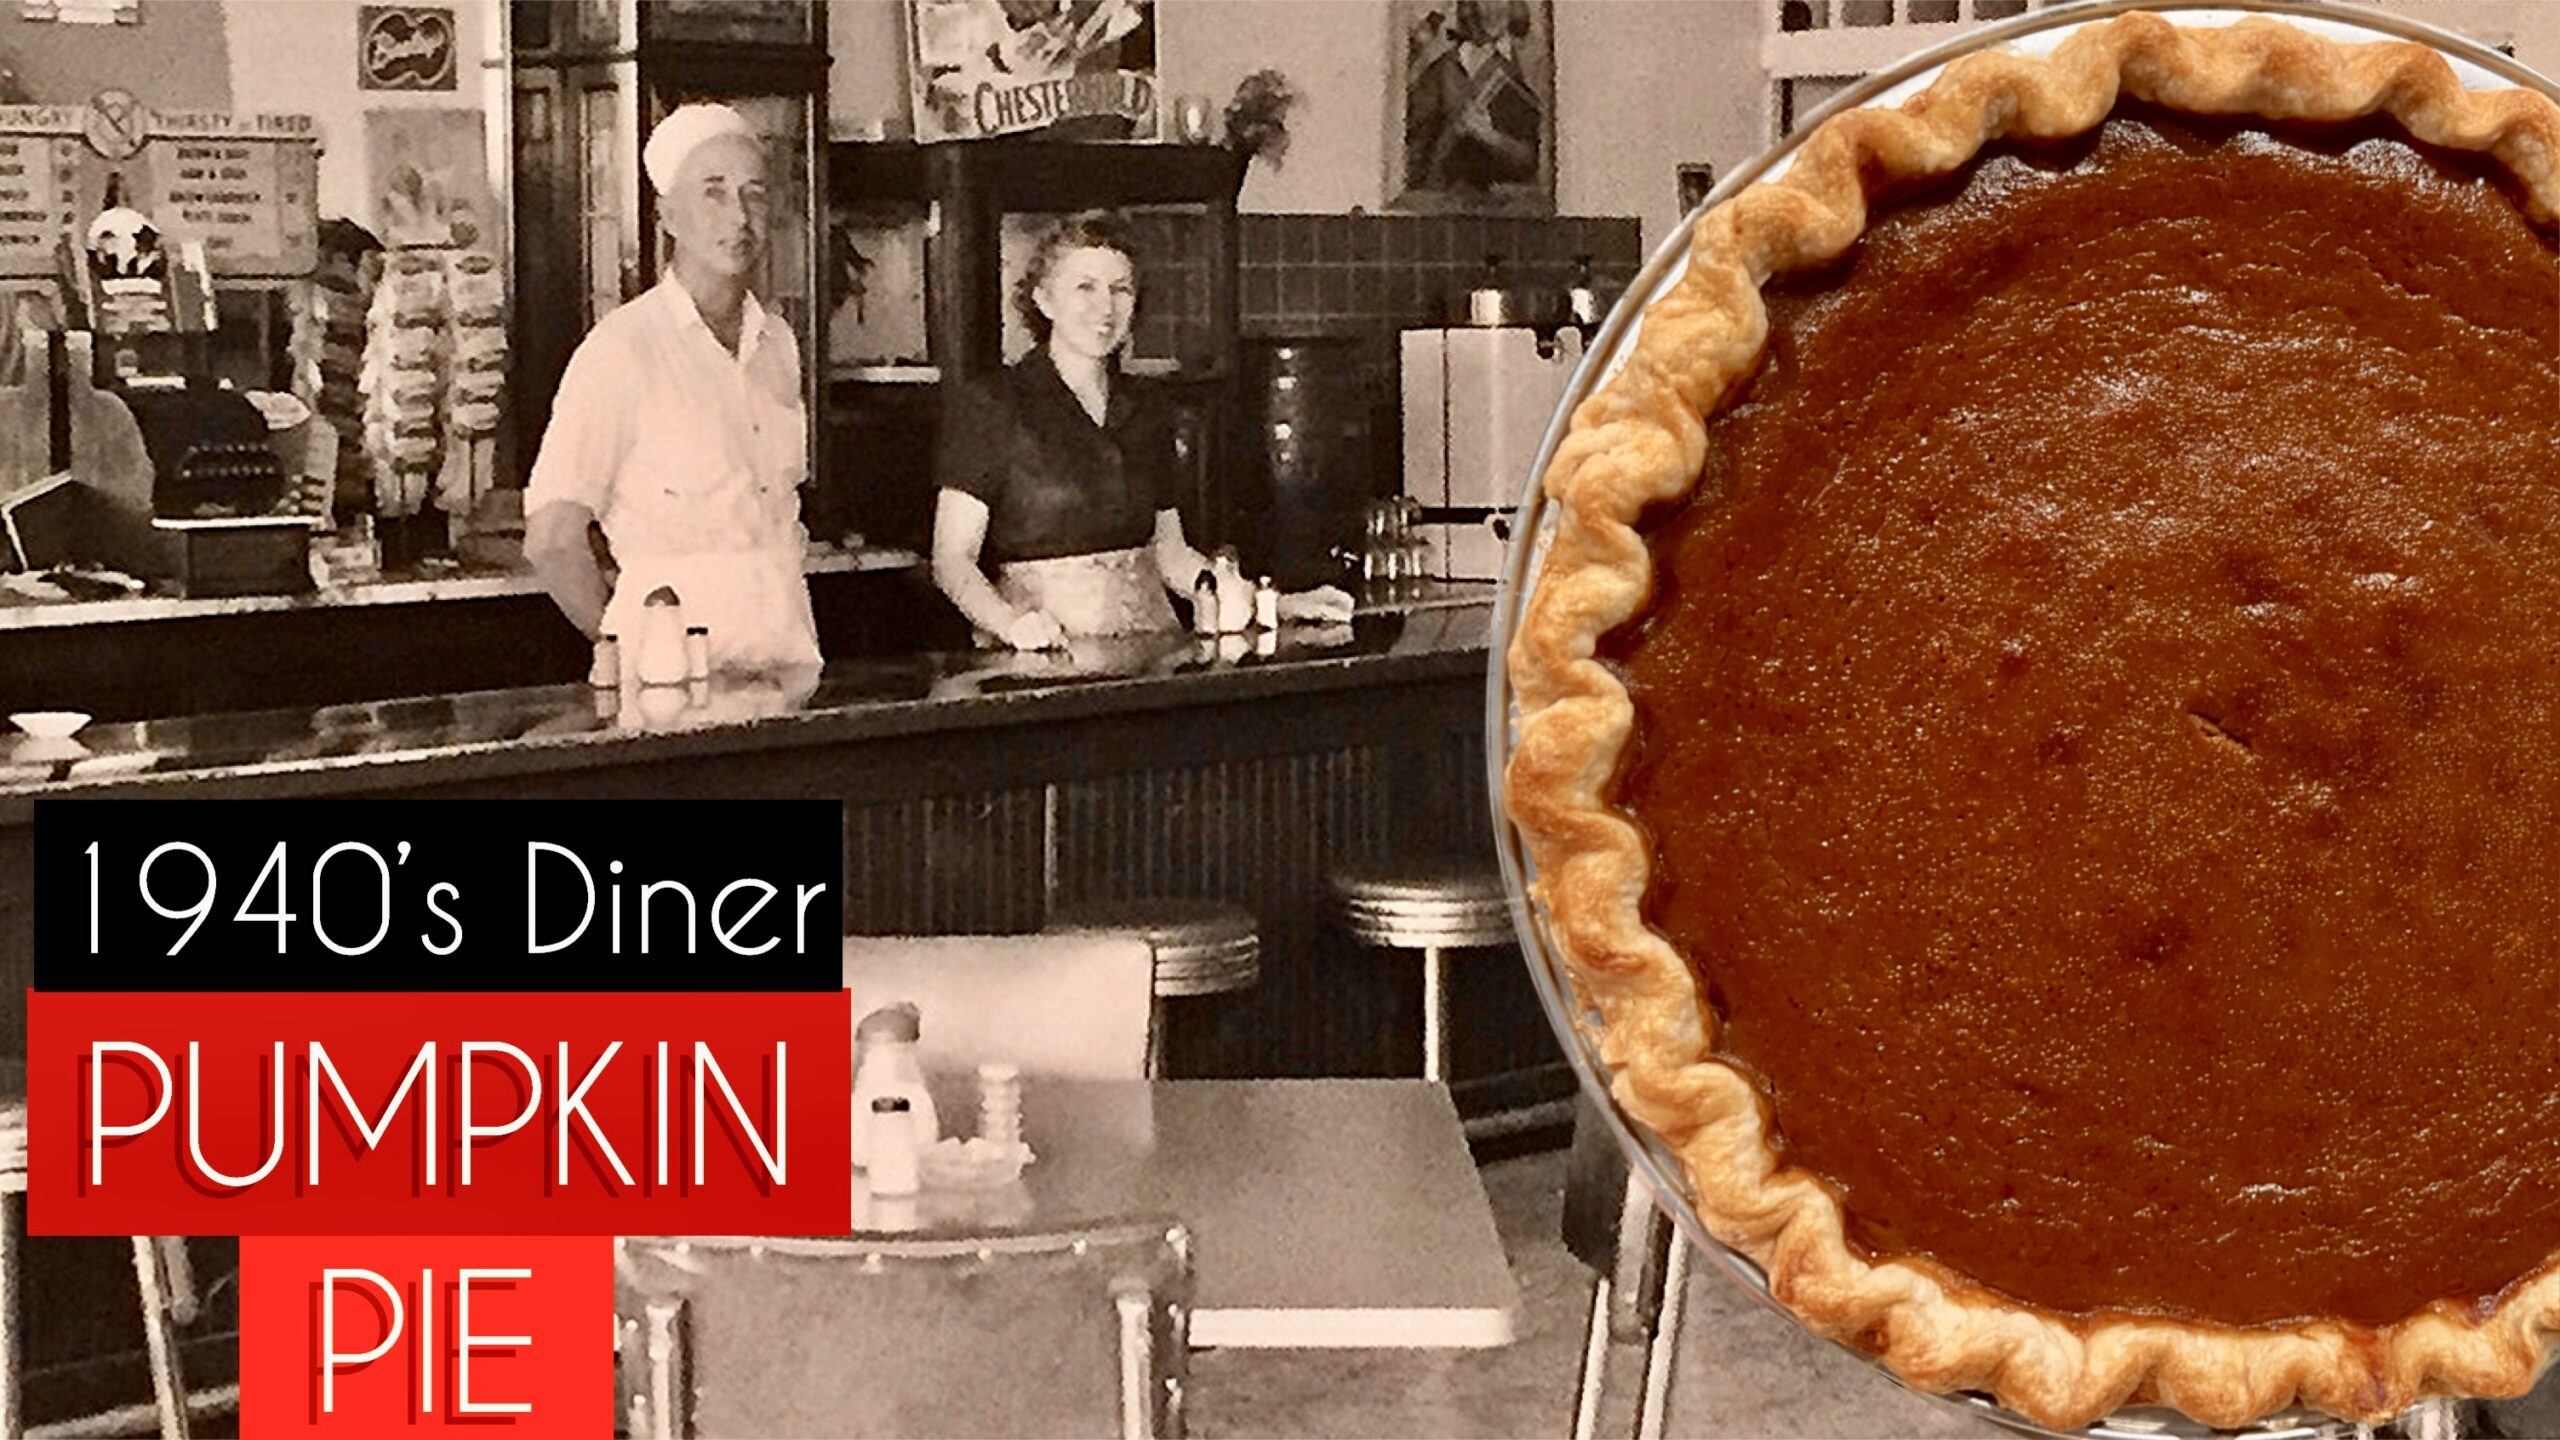 Diner Pumpkin Pie - 1940's Recipe - Double Stop Bake Shop